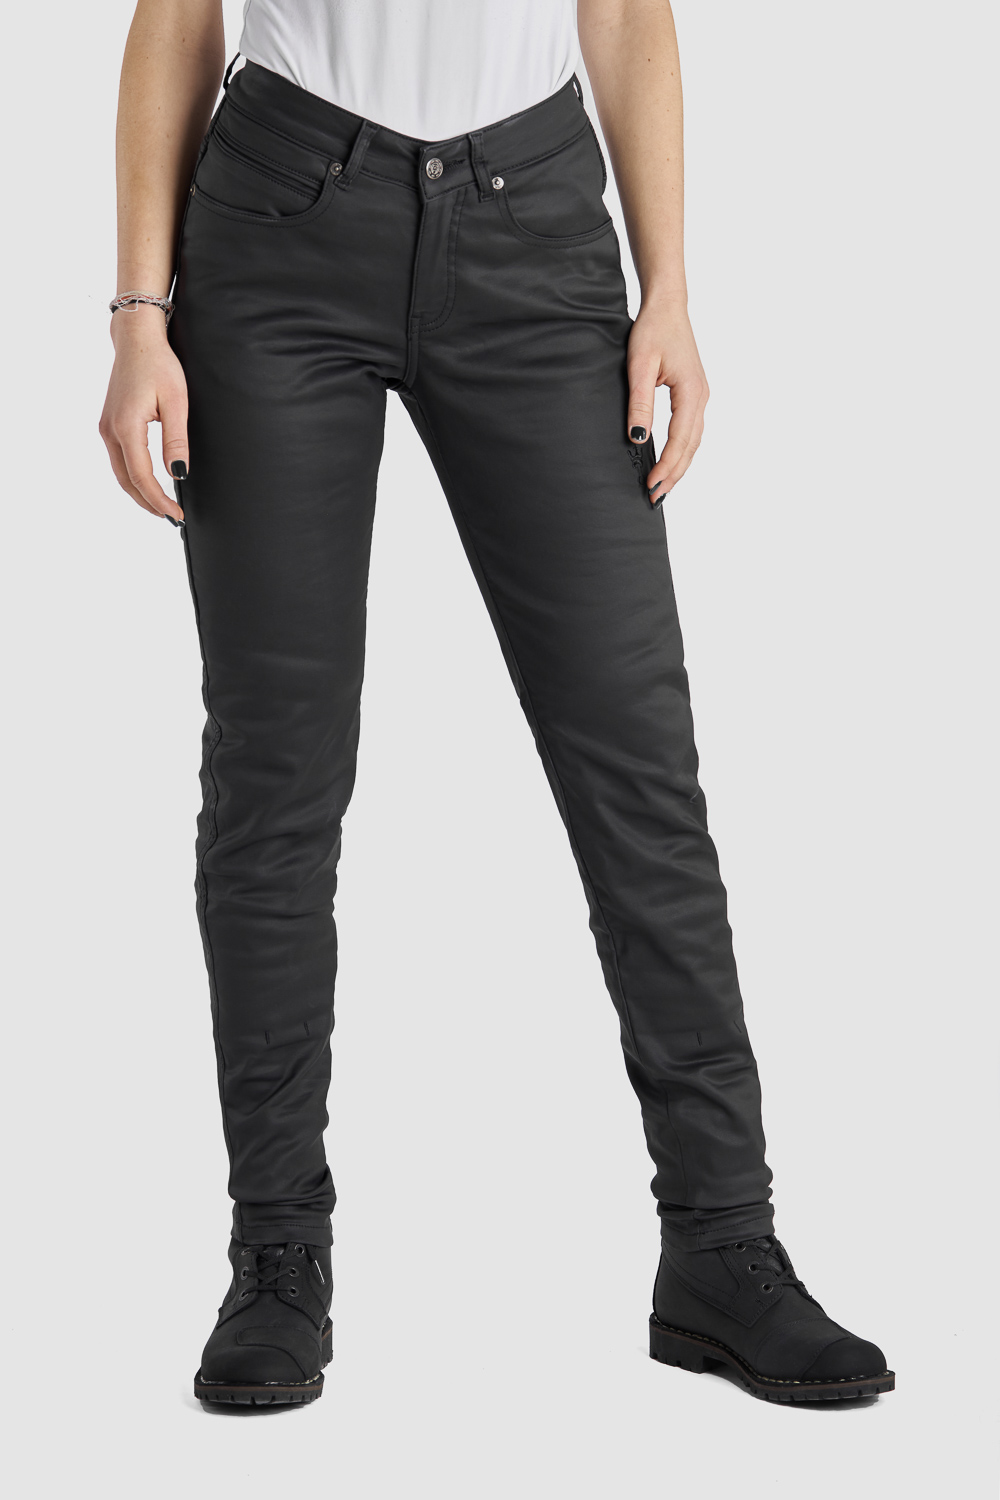 LORICA KEV 02 – Women’s Motorcycle Jeans Slim-Fit Kevlar® 1